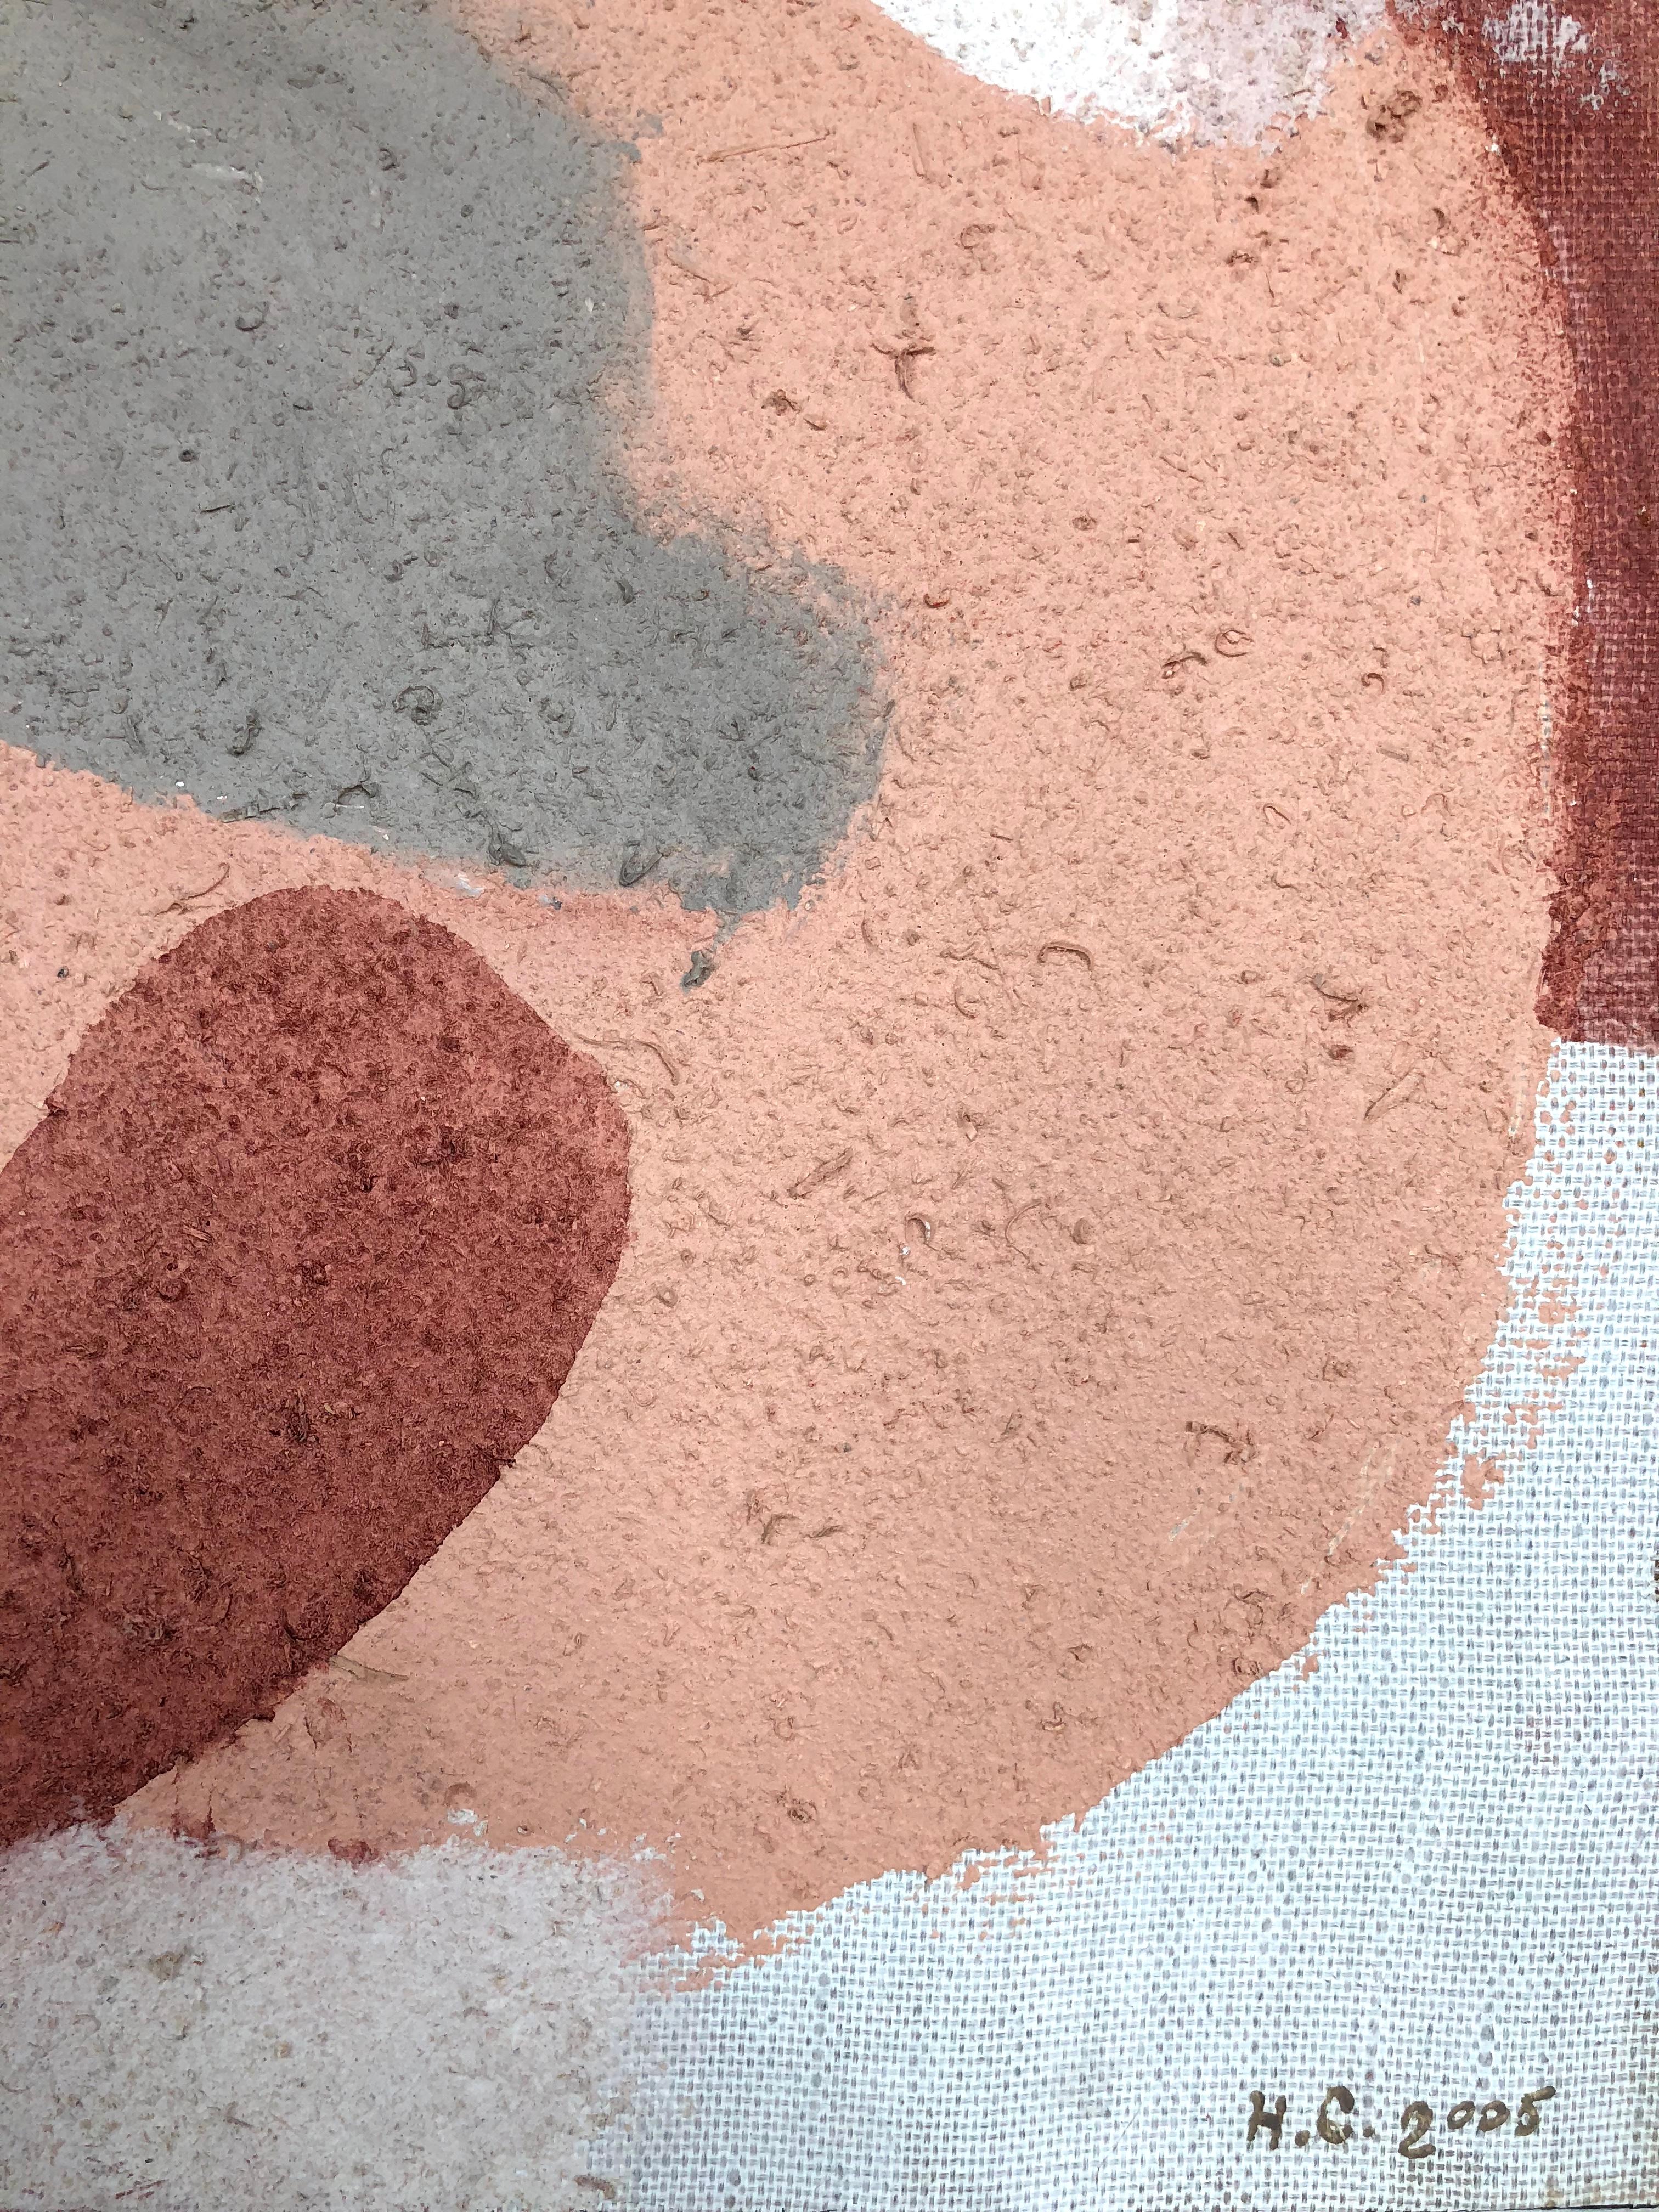 Composition XXI - Un tableau carré abstrait de couleur claire, gris, pêche et rouge bordeaux. L'auteur a utilisé de l'huile sur toile avec de la sciure de bois mélangée à de l'albâtre et du sable, créant ainsi une texture particulière.

La